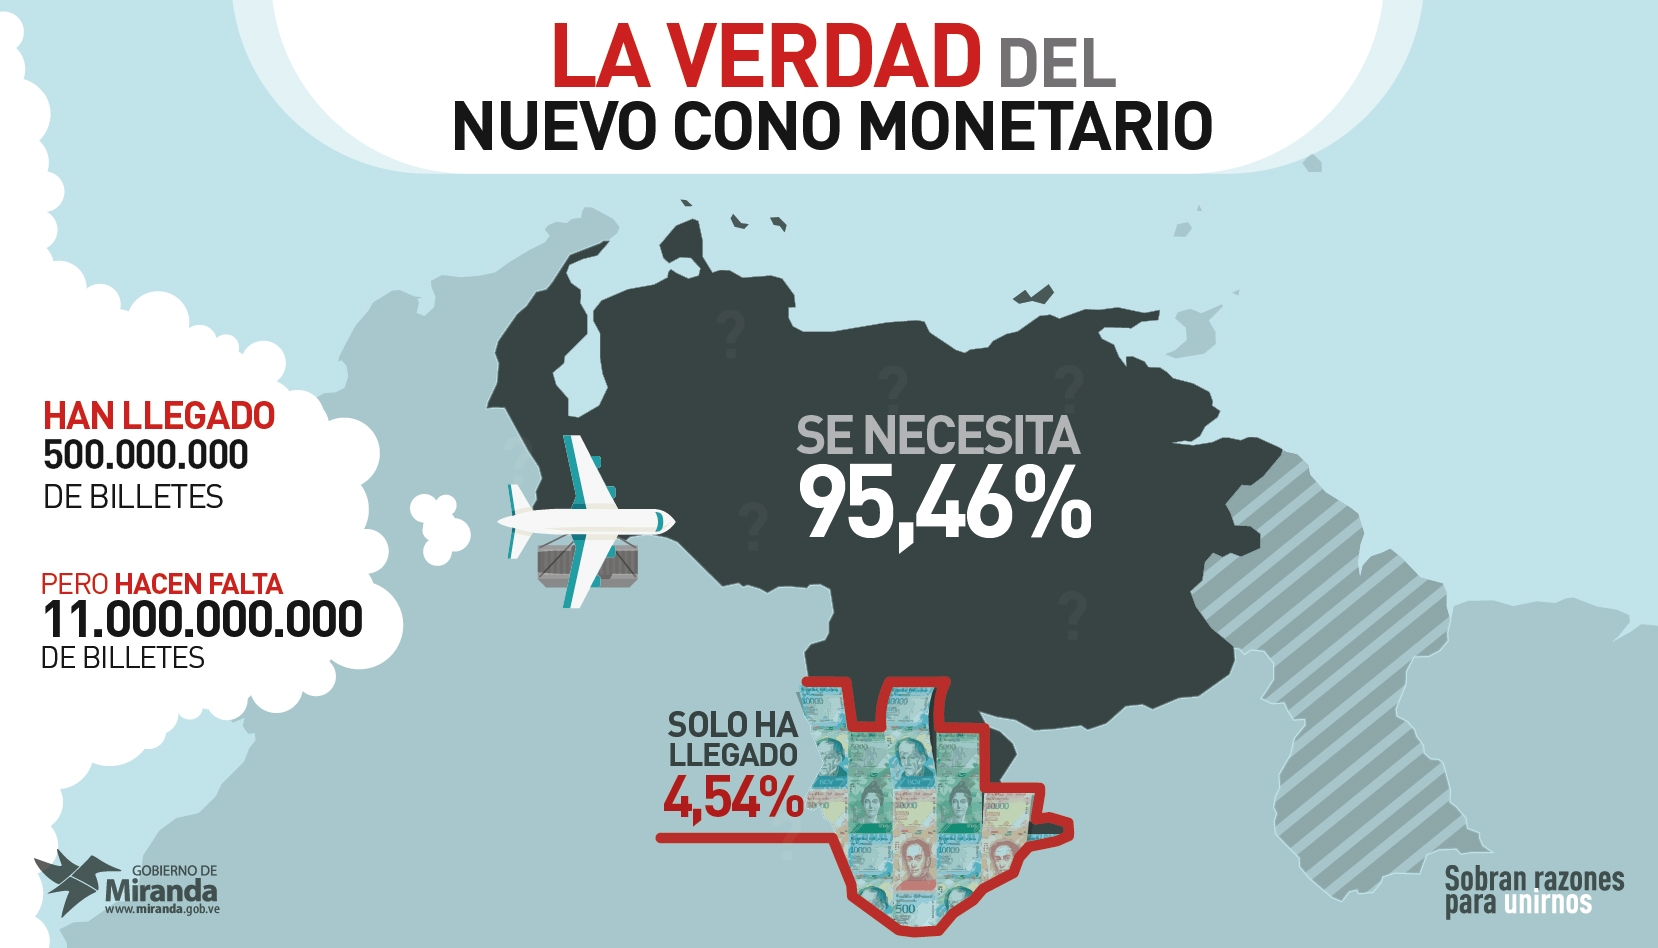 José Guerra: Menos del 5% de billetes del nuevo cono monetario han llegado al país